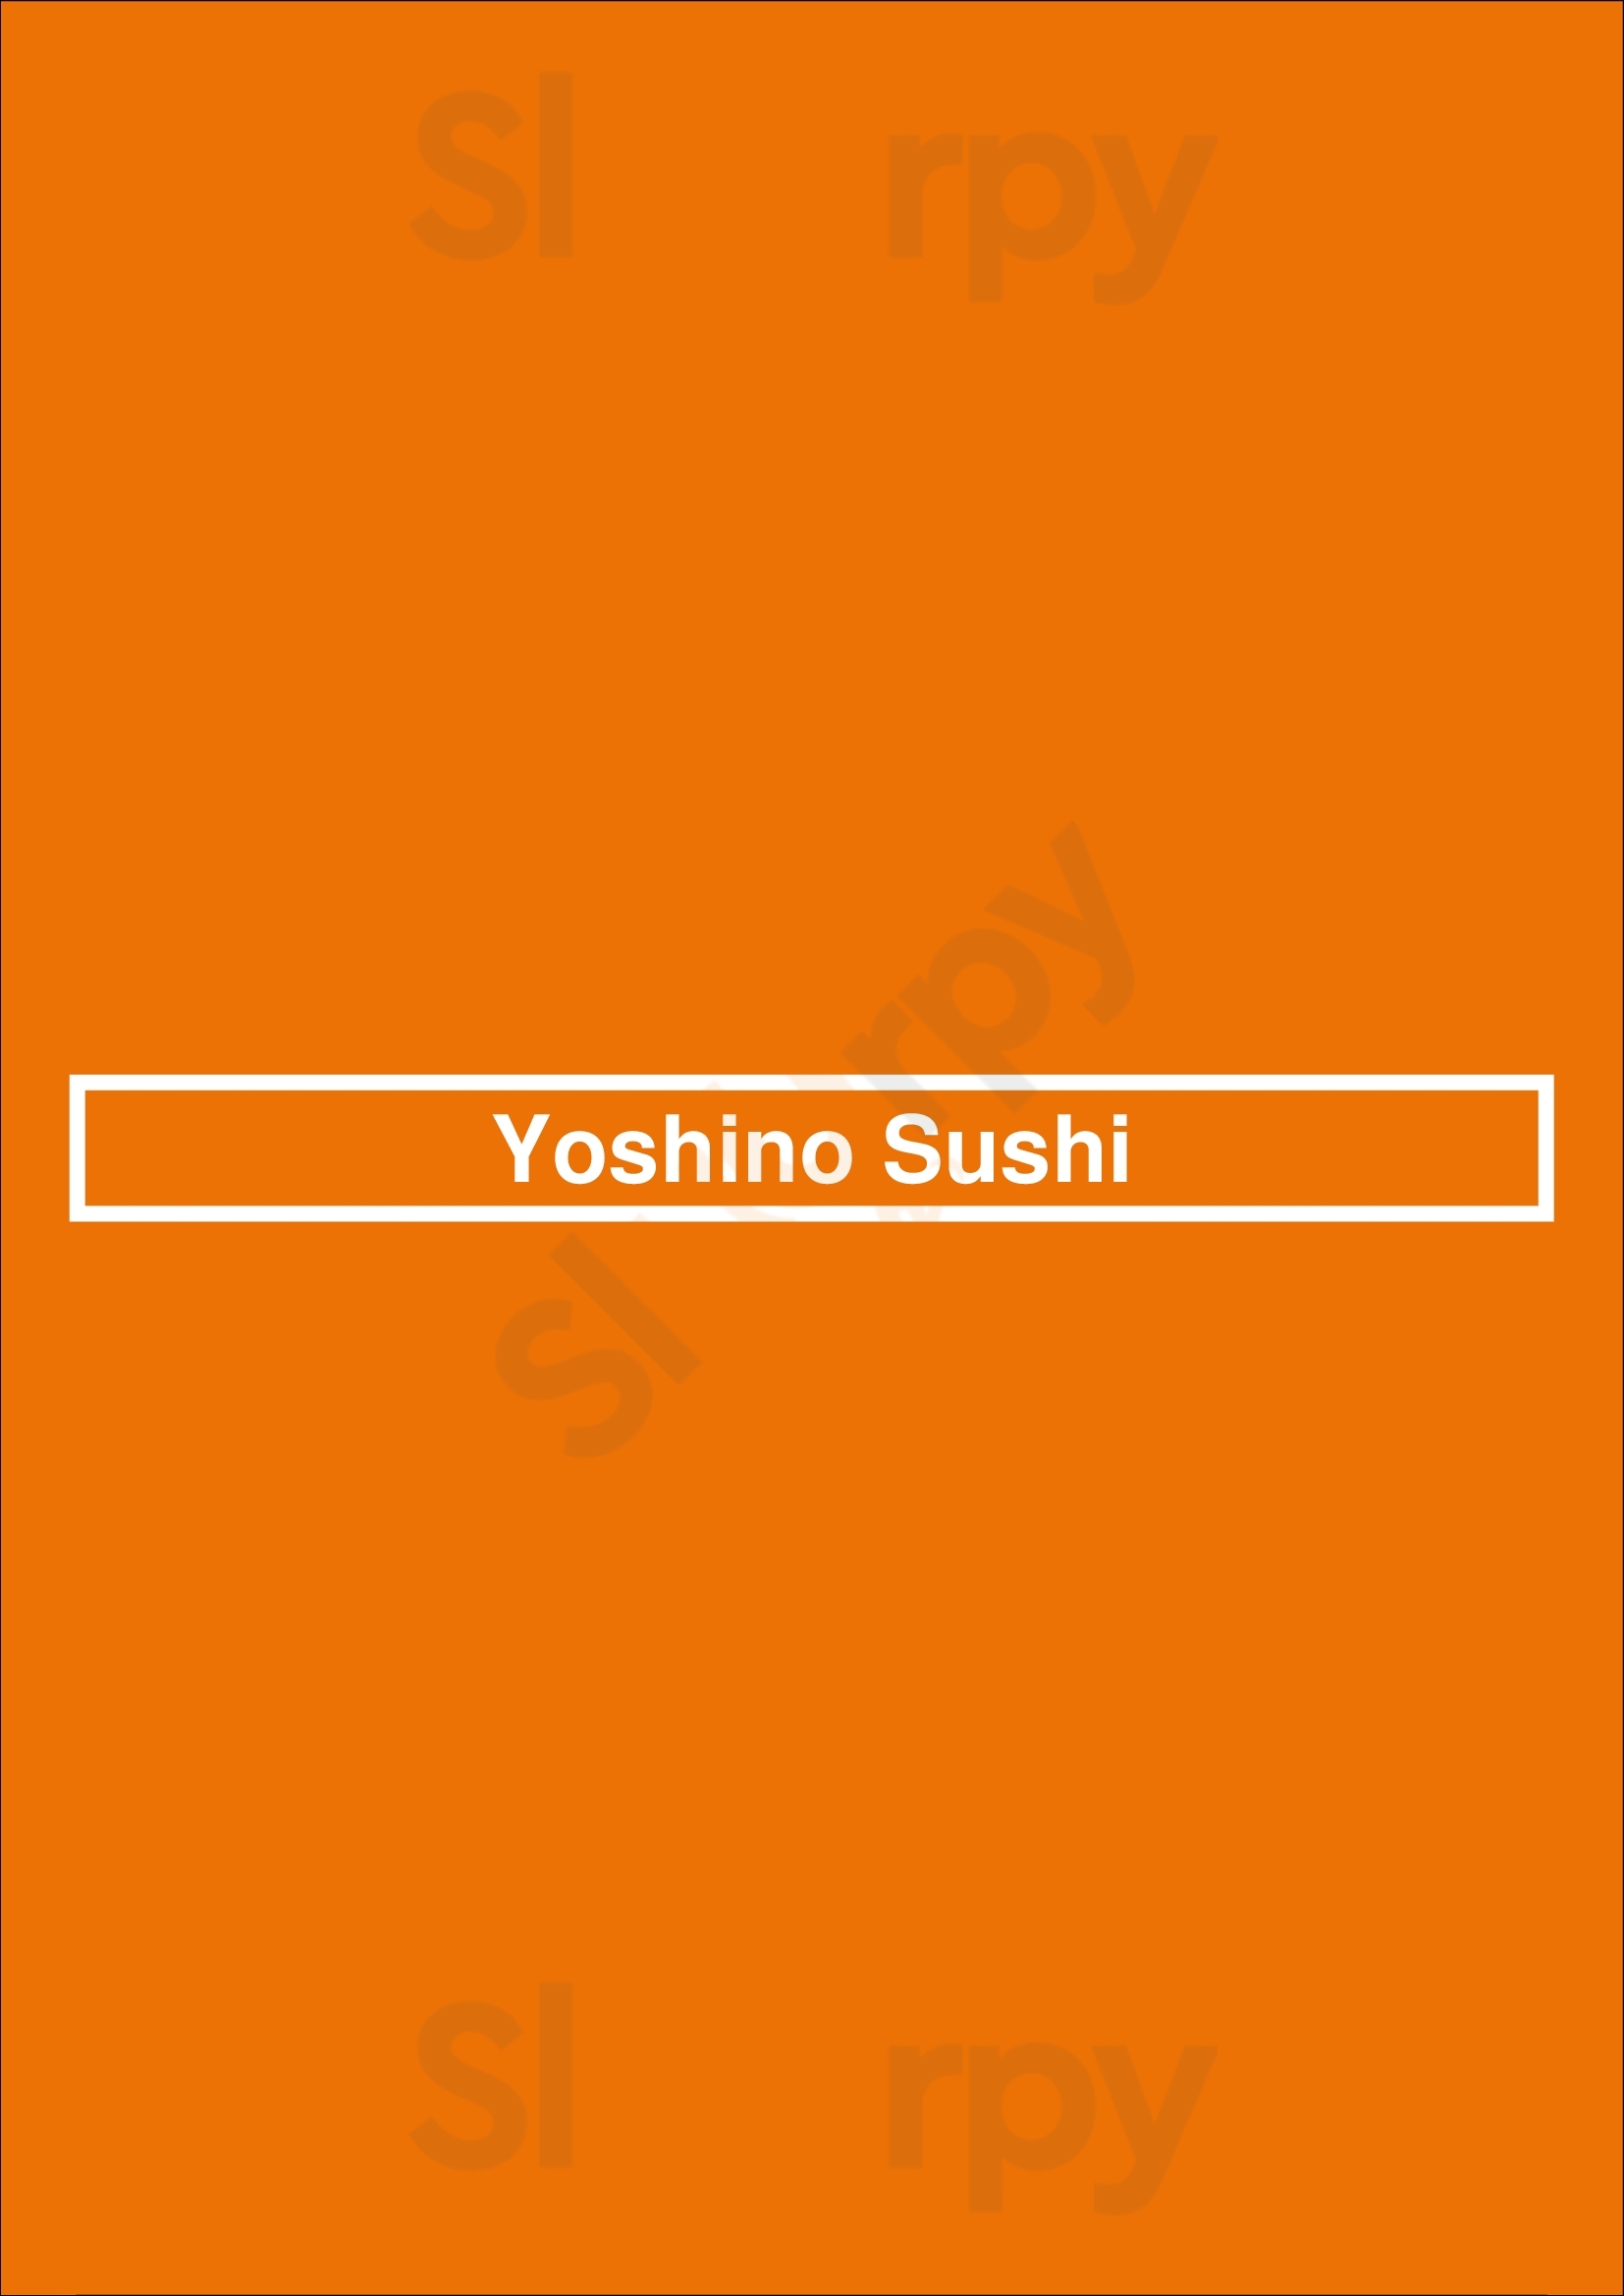 Yoshino Sushi Oakland Menu - 1